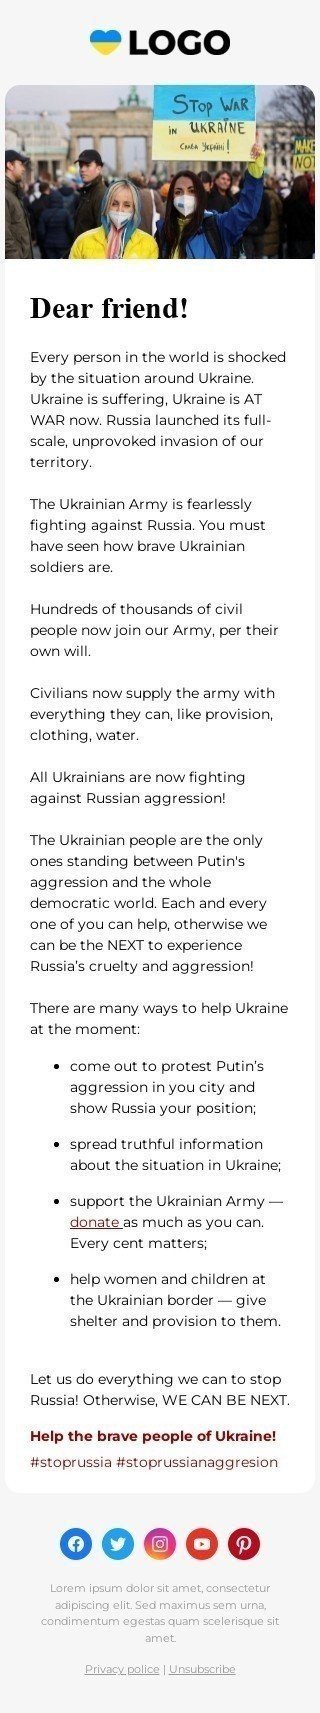 Modello di email "Fermiamo l'aggressione russa" Visualizzazione mobile